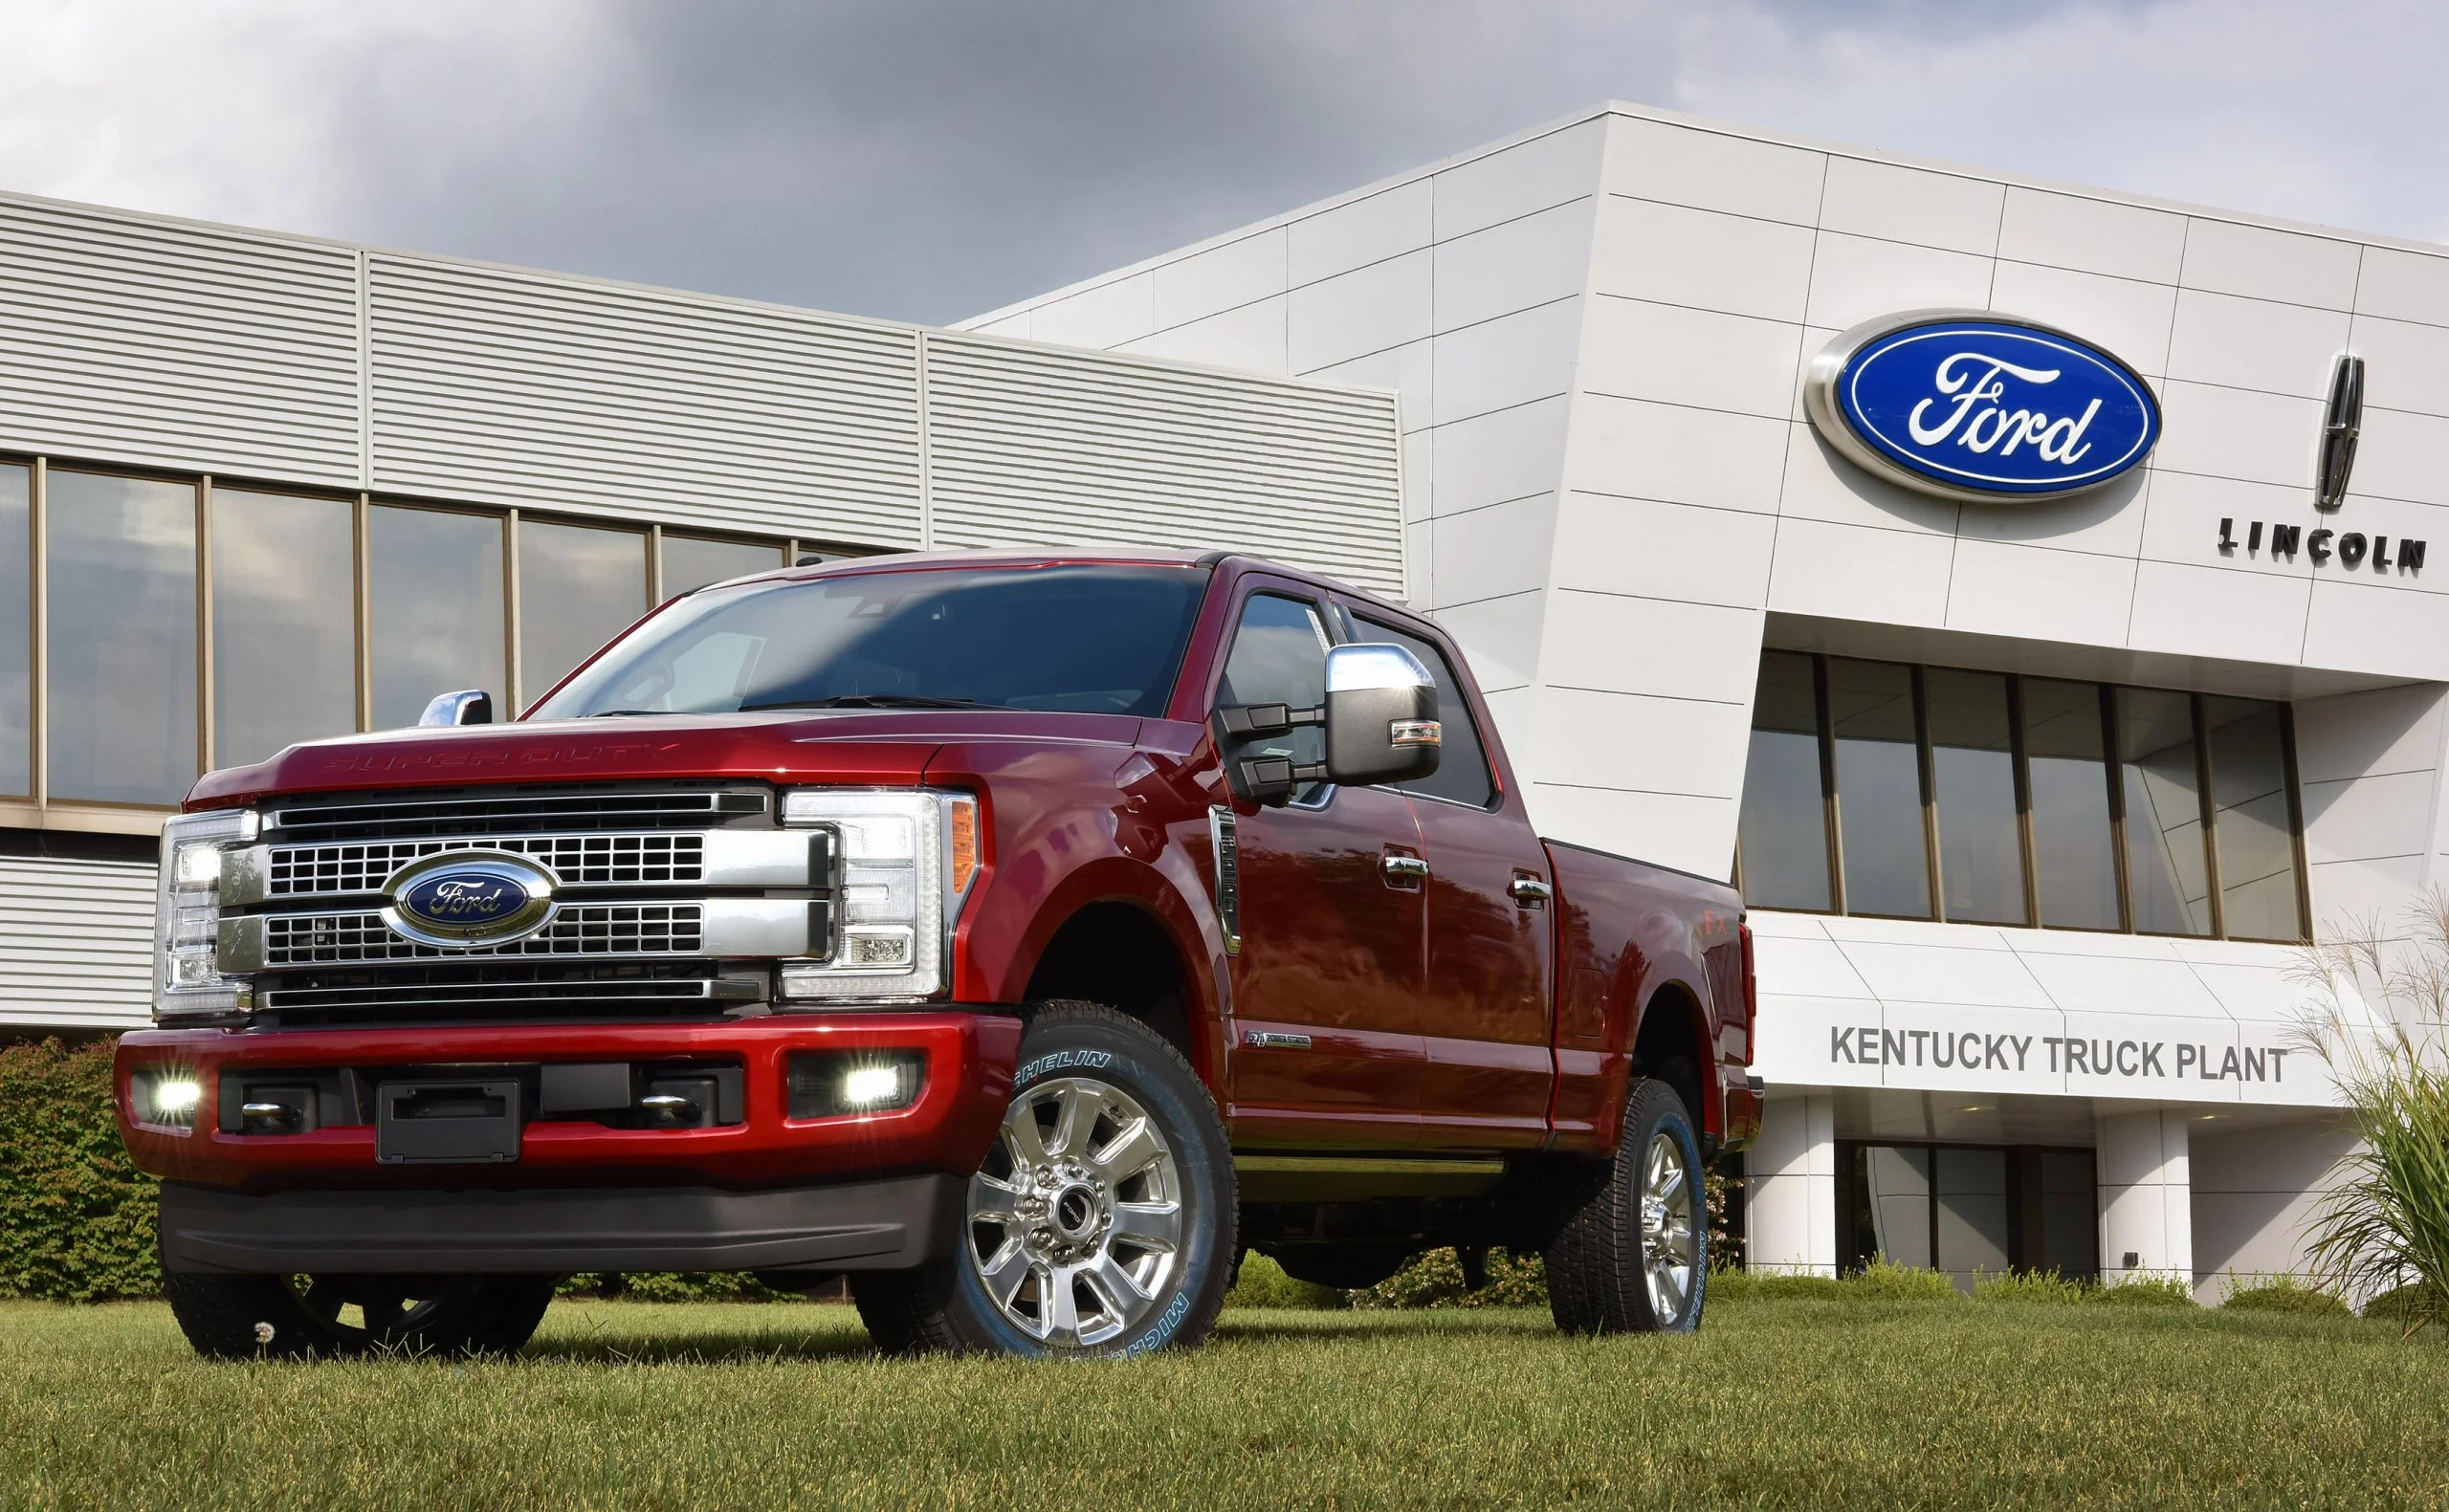 テレビ/映像機器 その他 Ford Motor Company Kentucky Truck Plant - Louisville, Kentucky, USA